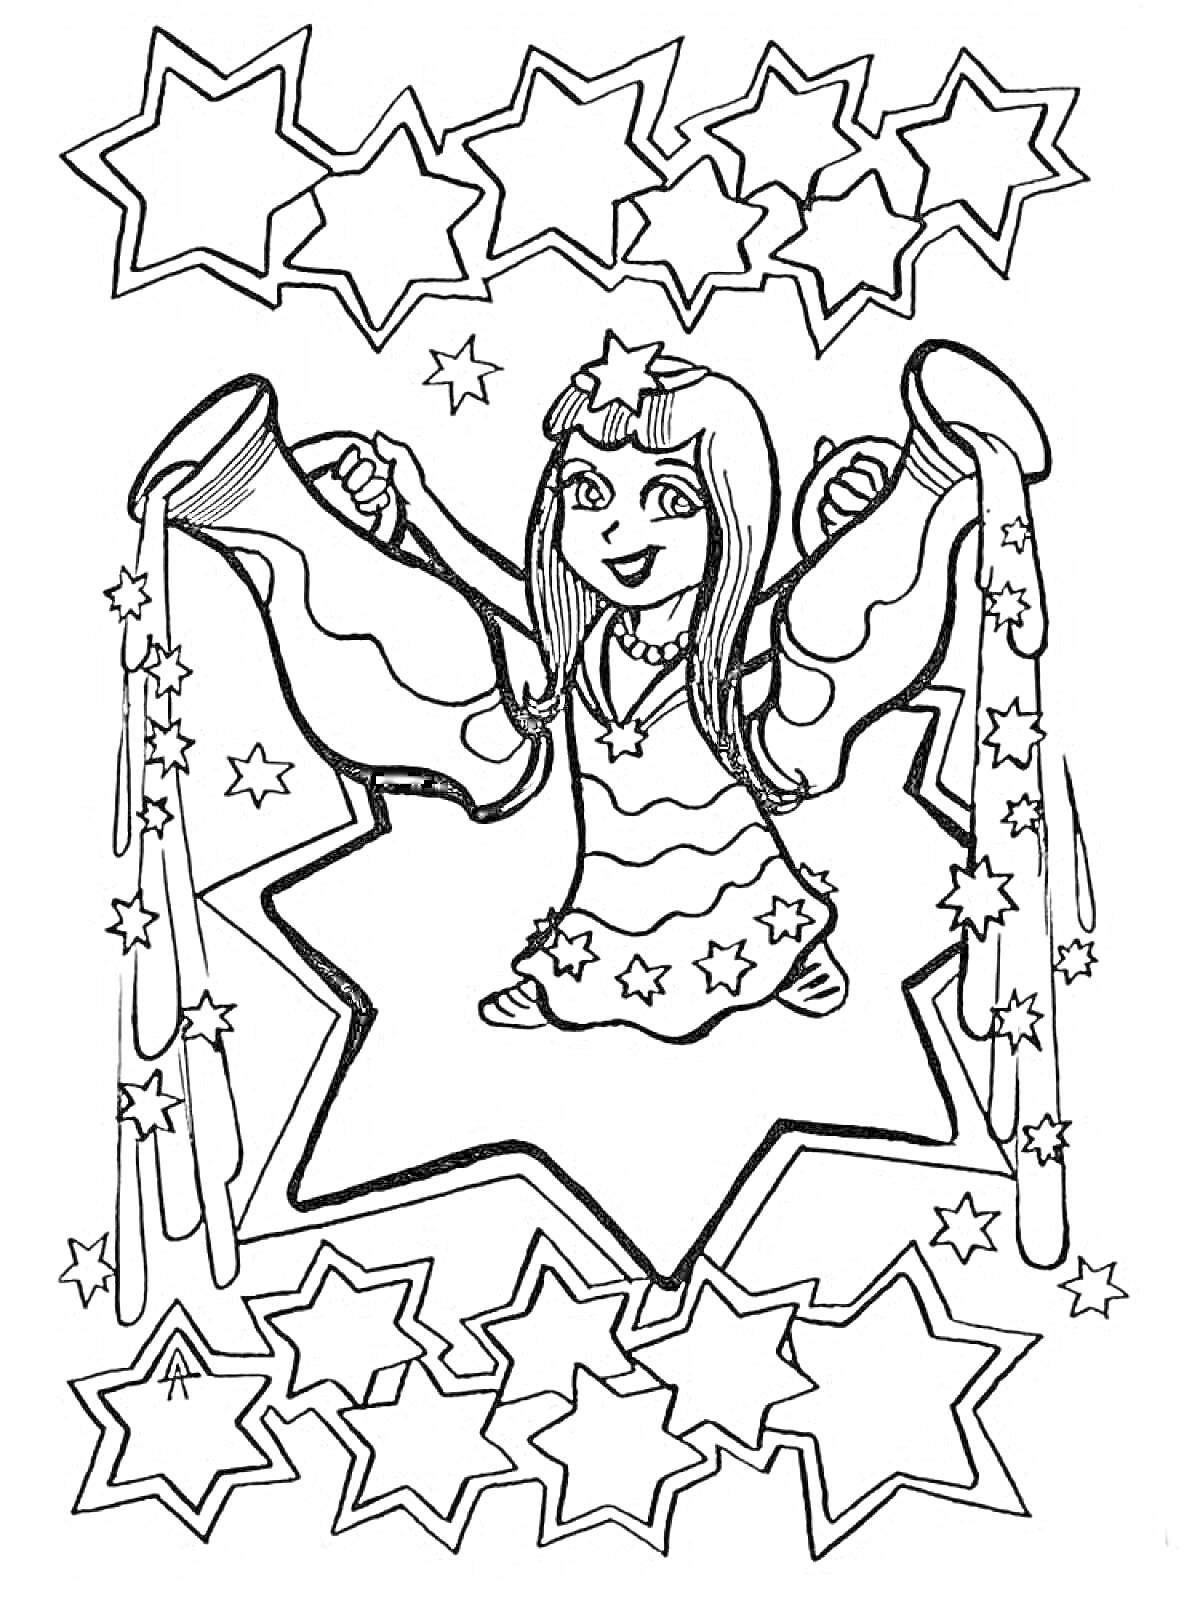 Раскраска Девочка-Водолей с кувшинами, вокруг много звезд